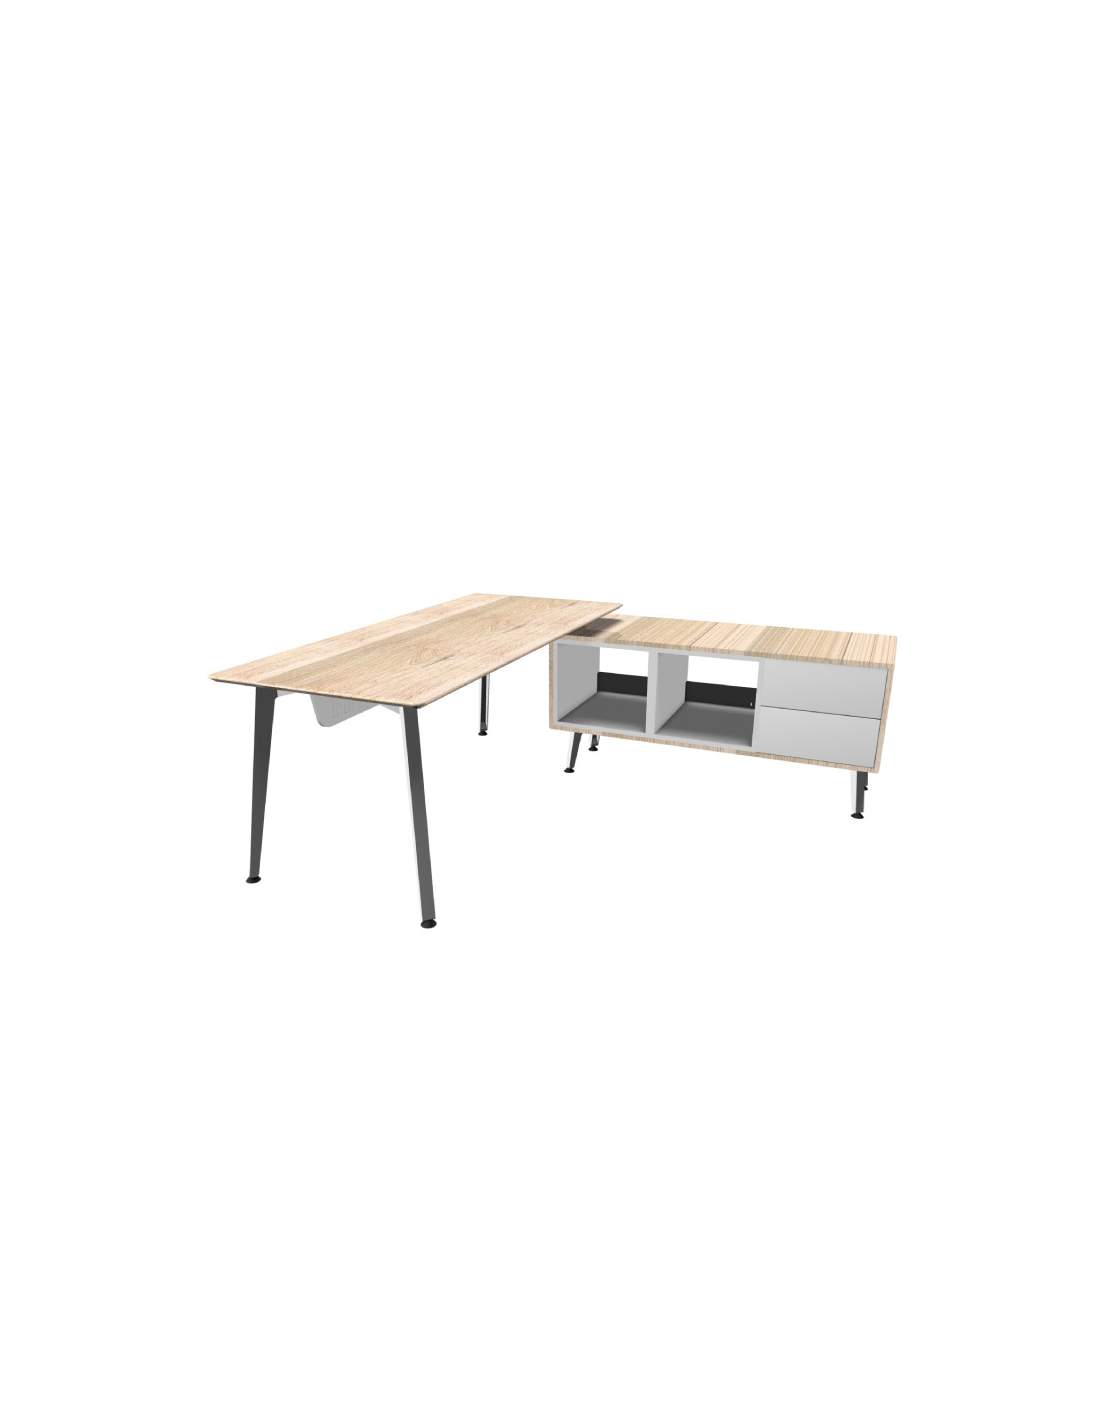 Mesa de despacho Hebe de Emobok con mueble - La Oficina Online